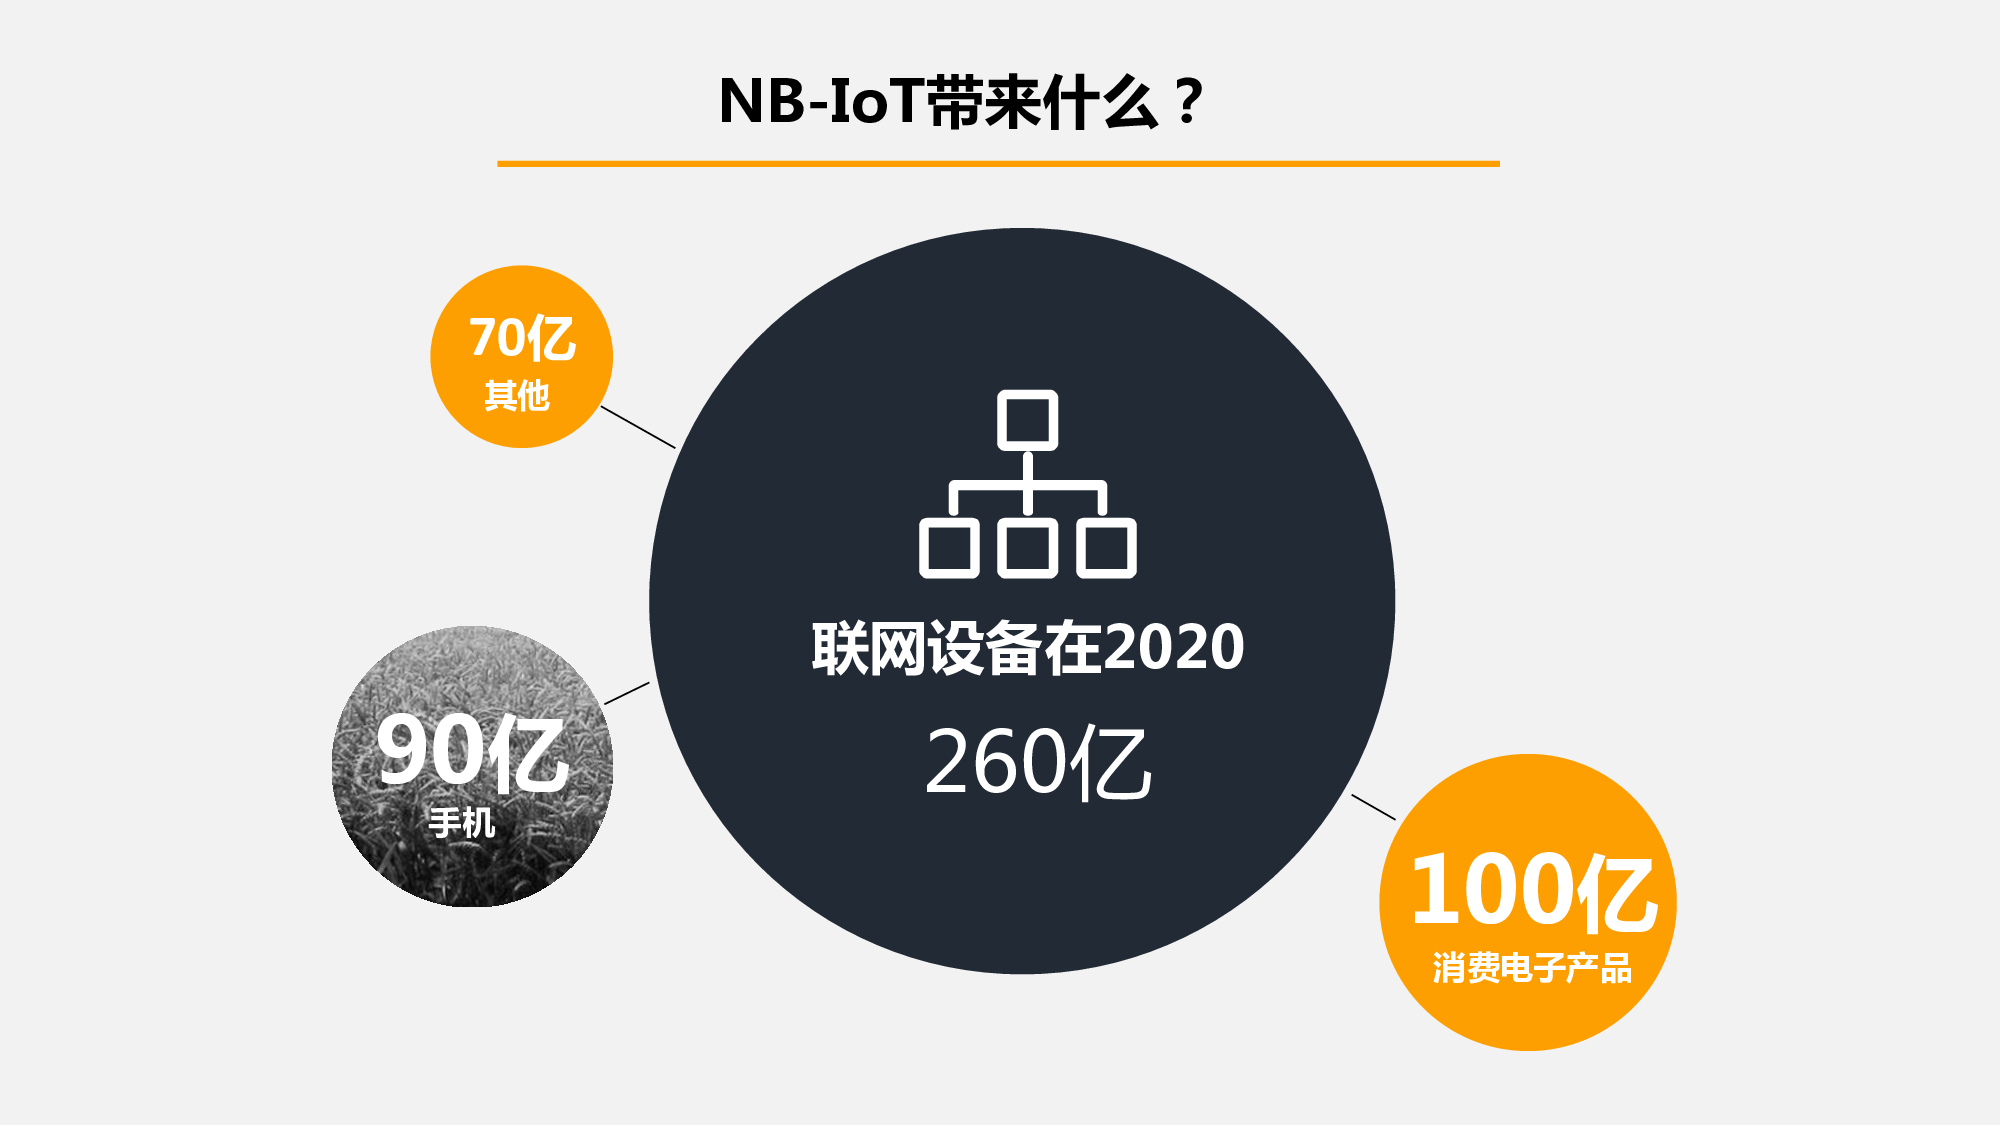 易赛-NB-IoT智能门锁图片